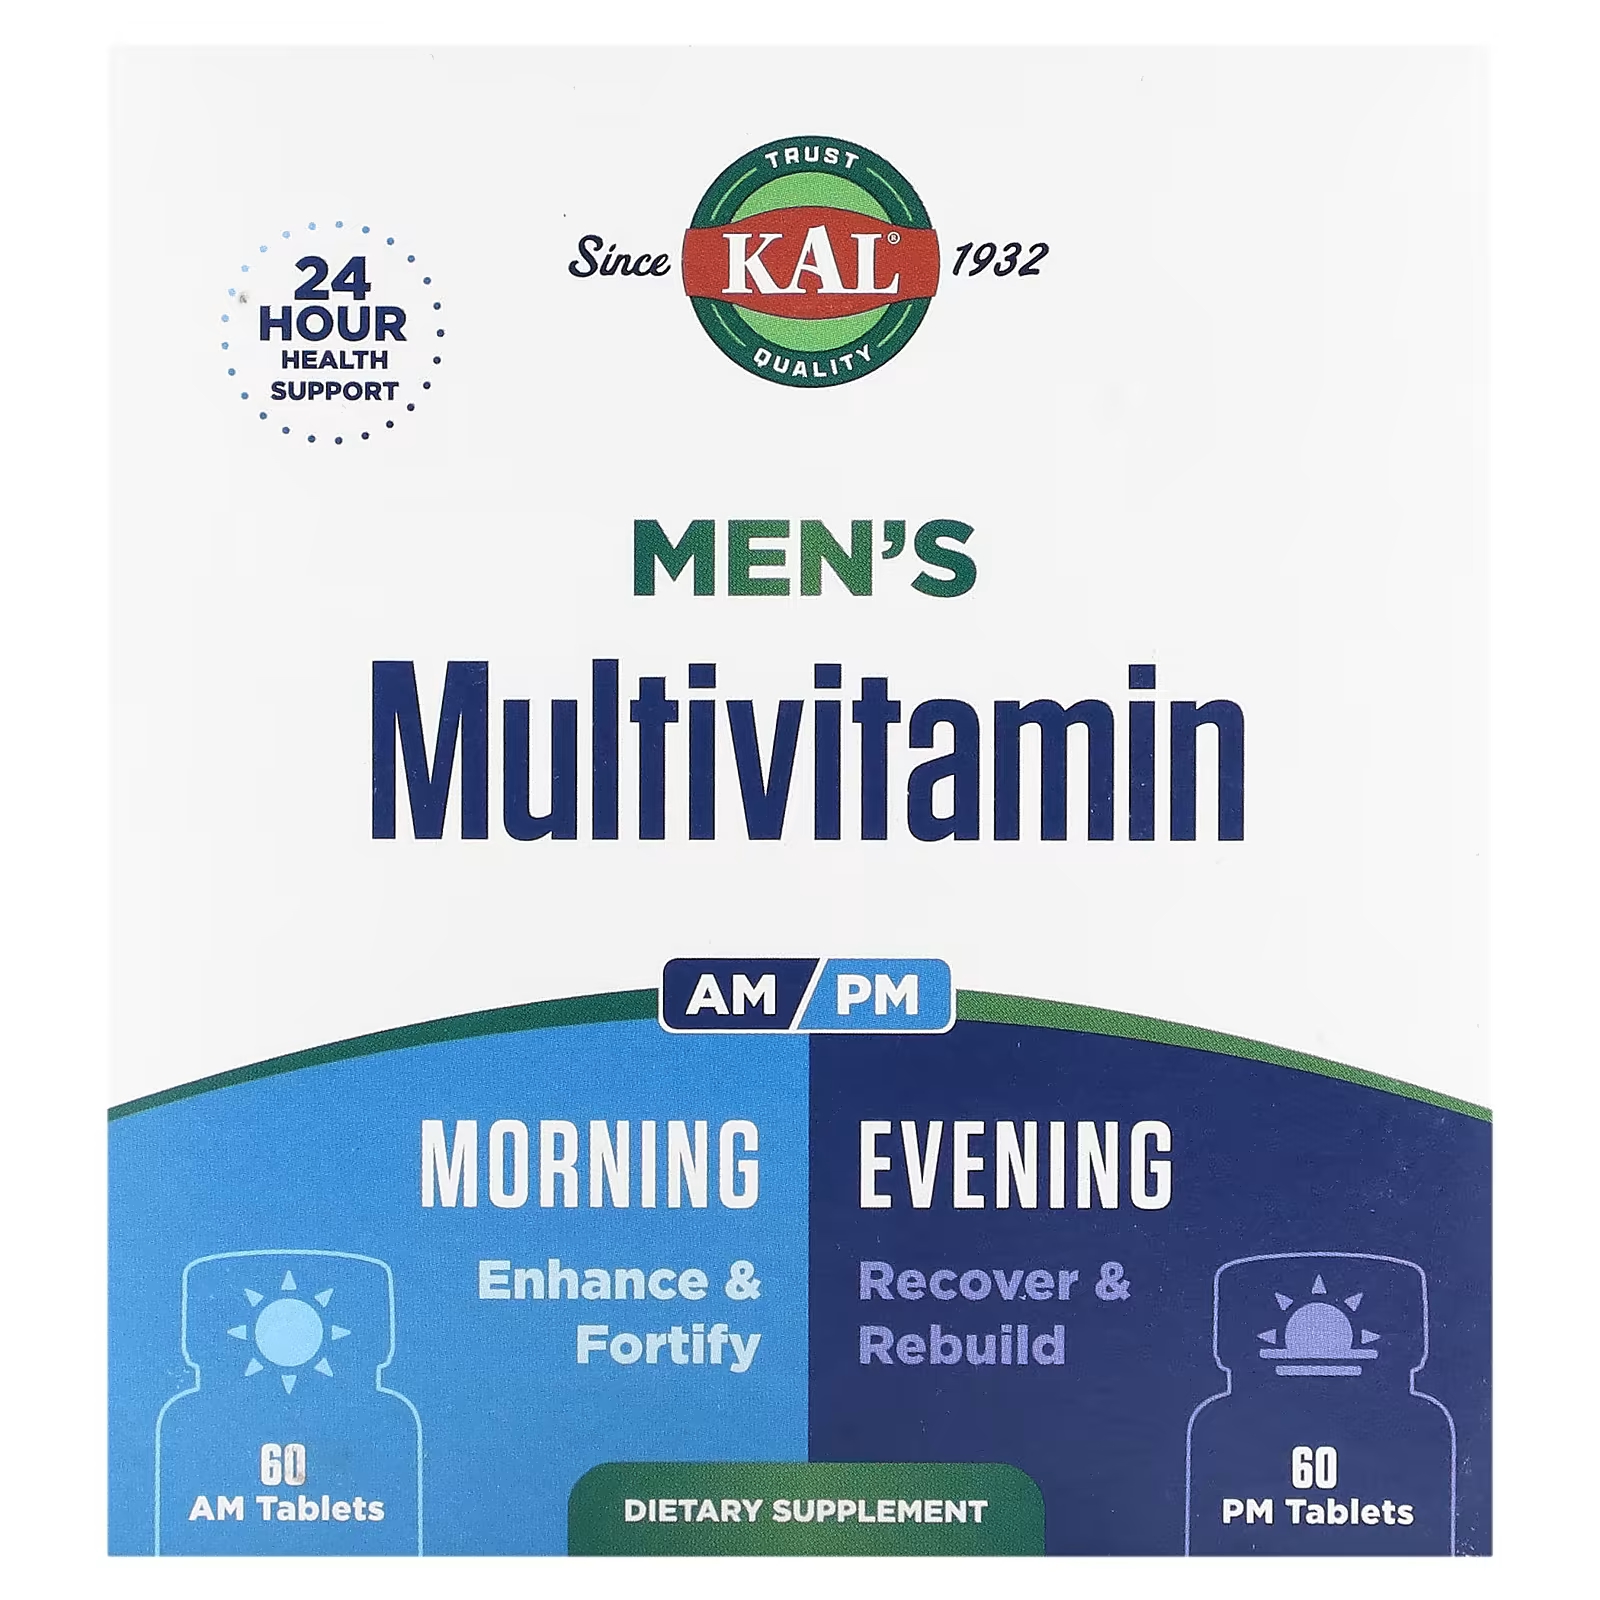 Мультивитамины мужские утром и вечером Kal, 2 упаковки по 60 таблеток nature s way perimenopause formula препарат в период пременопаузы для использования утром и вечером 60 таблеток